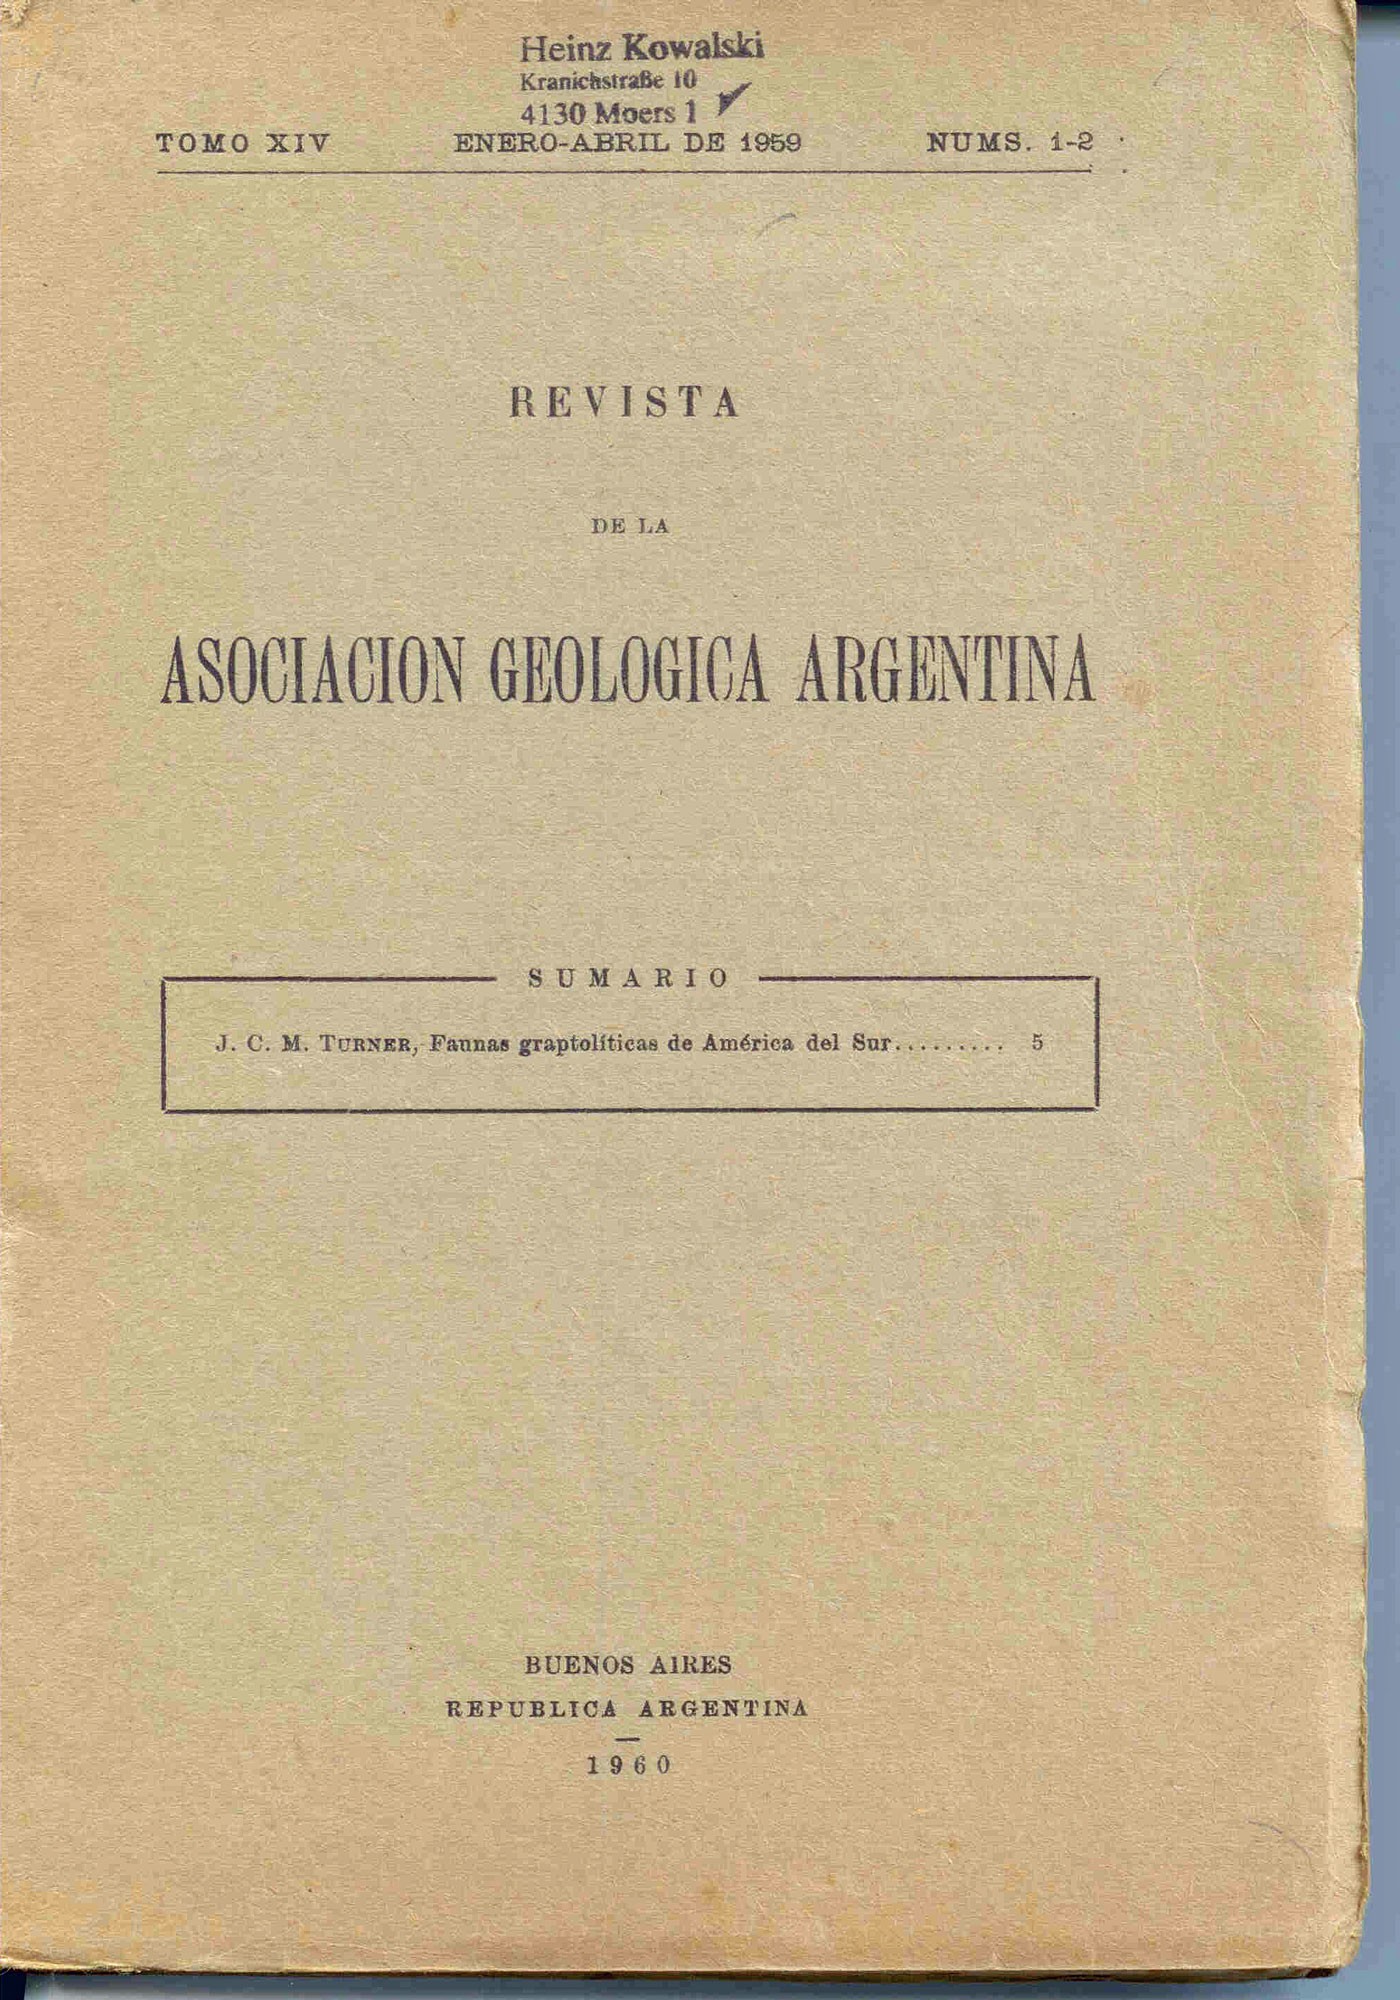 Turner, J. C. M.: Faunas Graptoliticas de America del Sur. Revista de la Asociación Geológica Argentina. Tomo XIV.